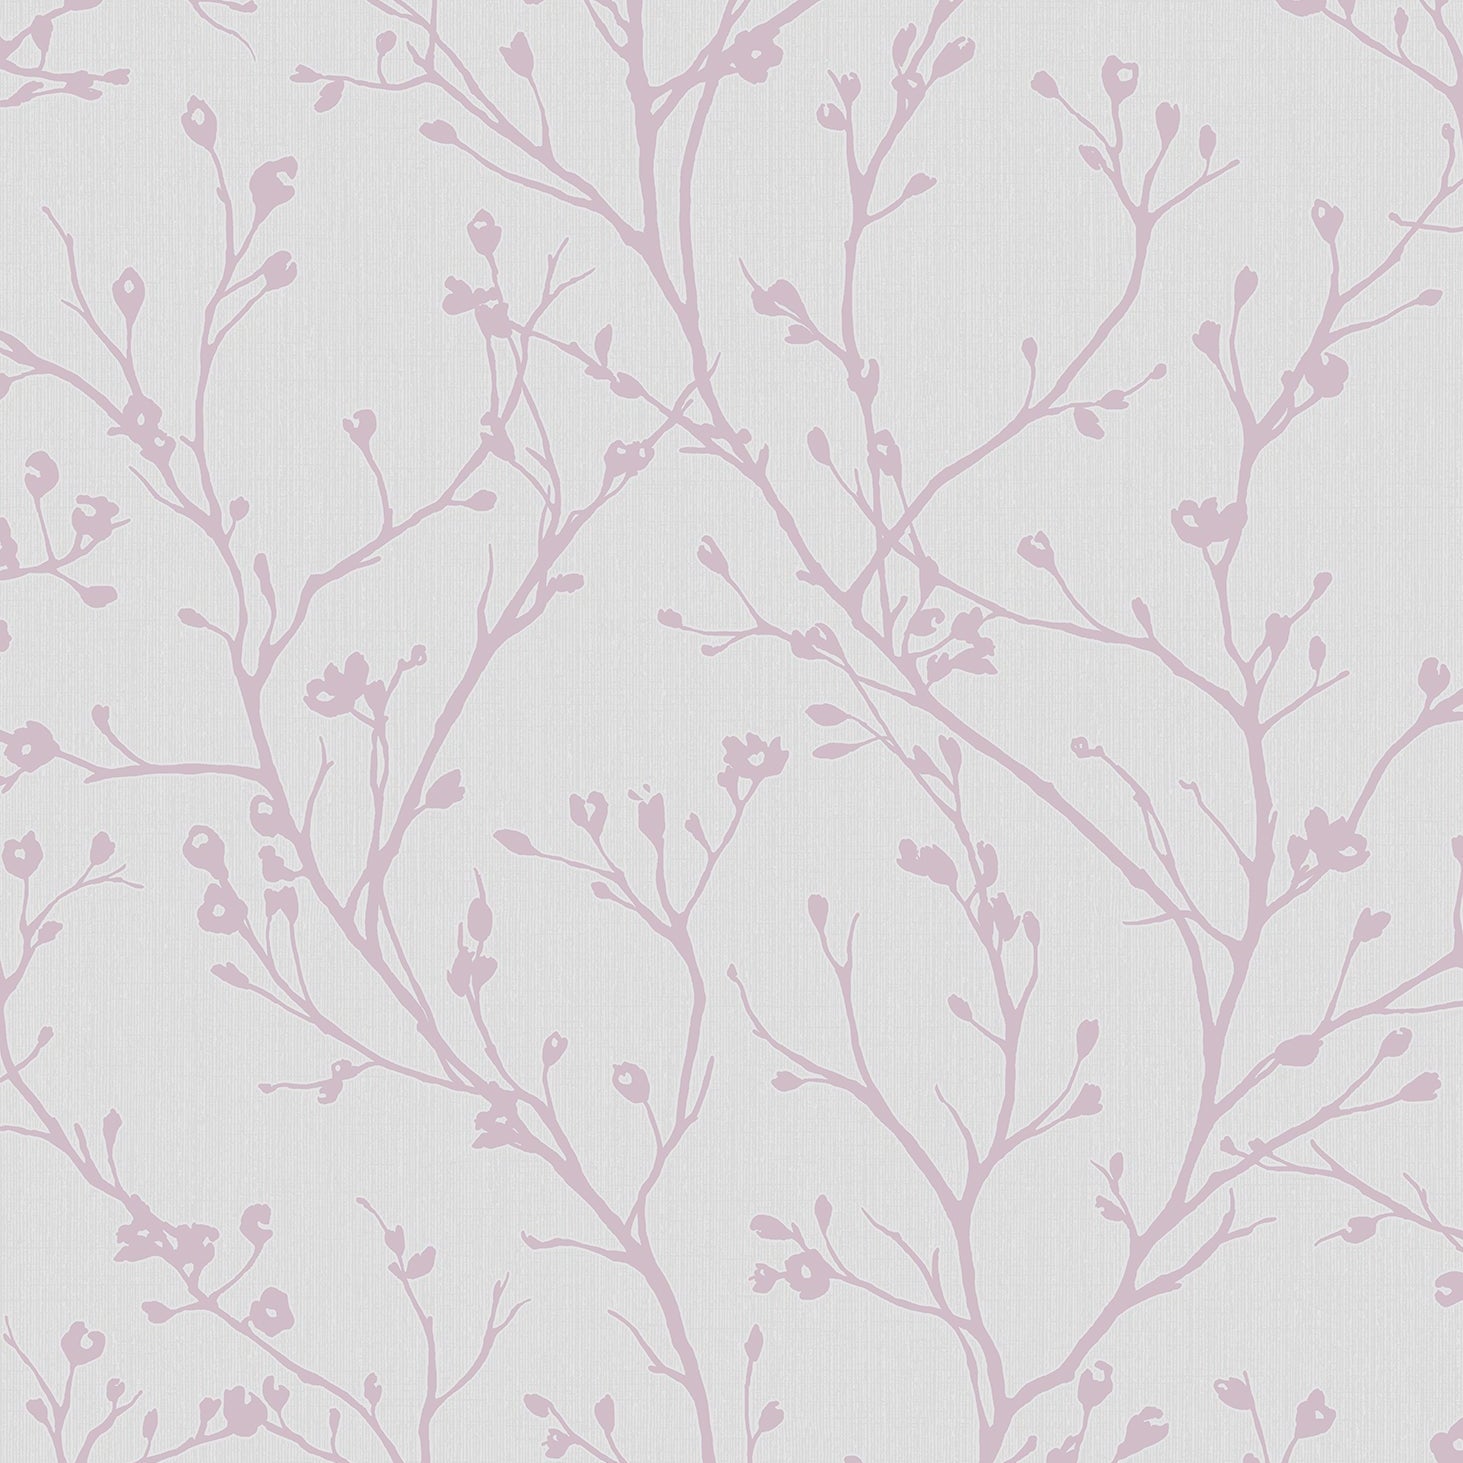 Purchase 2766-42035 KItchen & Bath Essentials Orchis Lavender Flower Branches Brewster Wallpaper